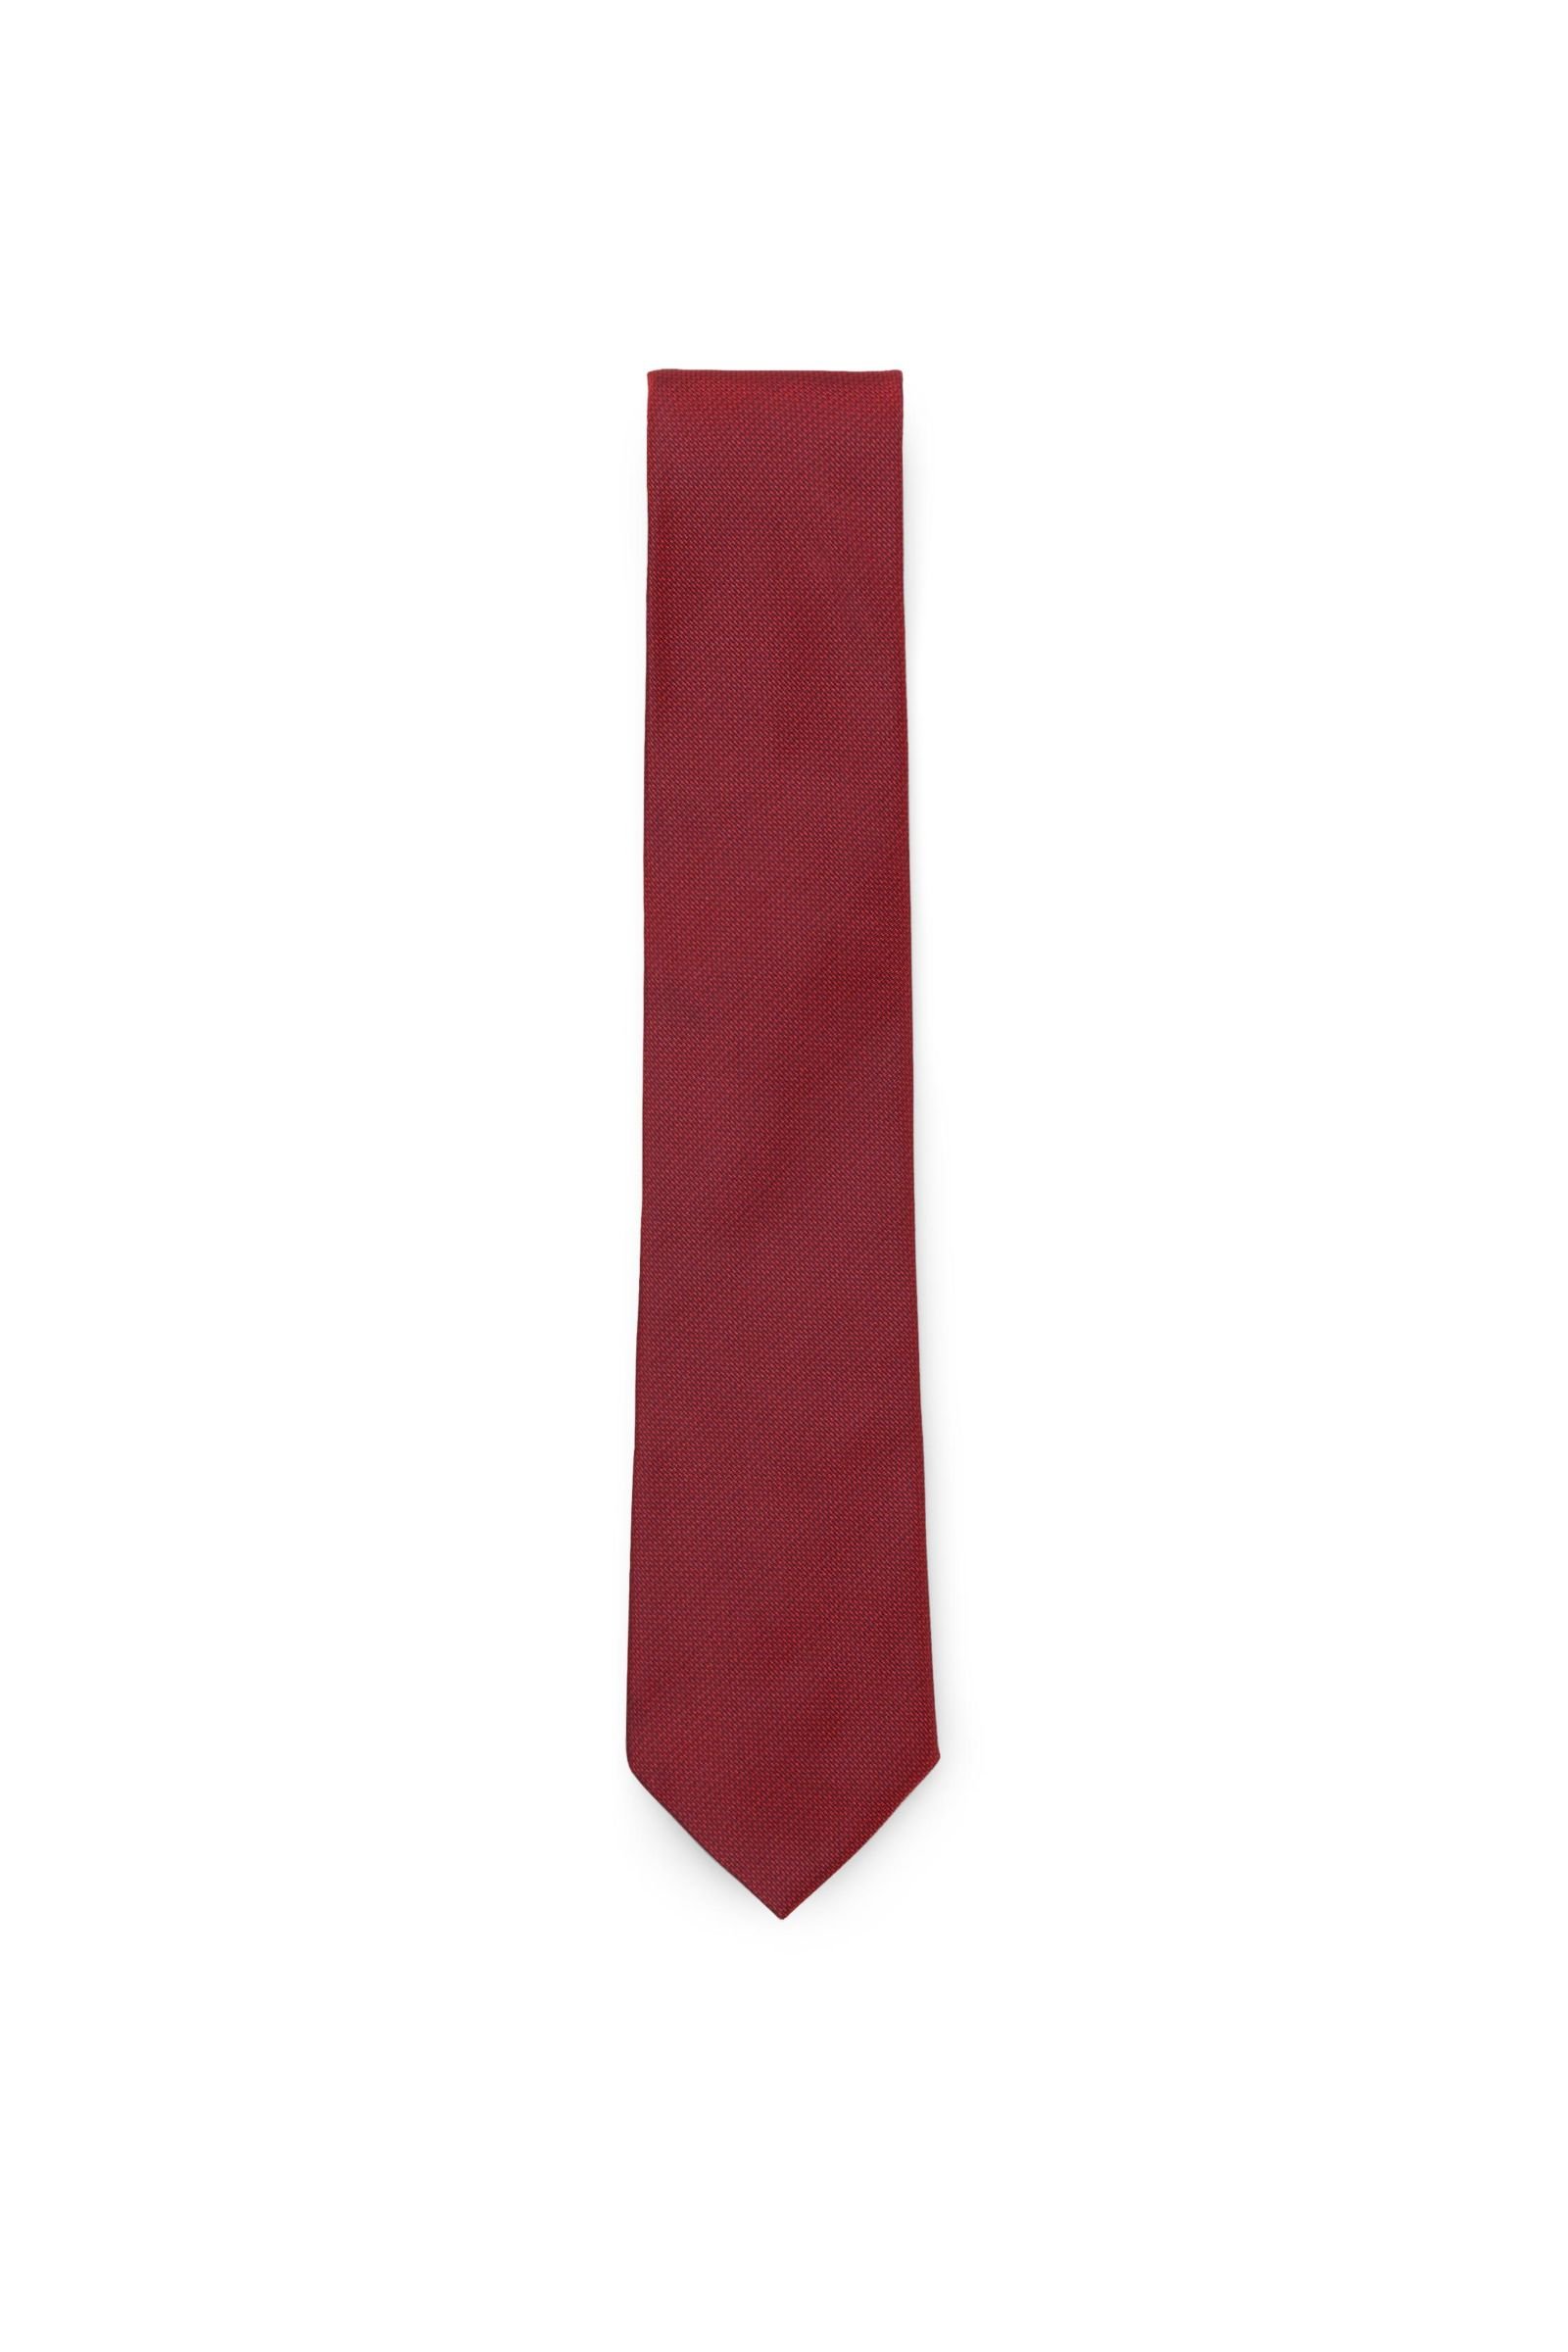 Silk tie dark red